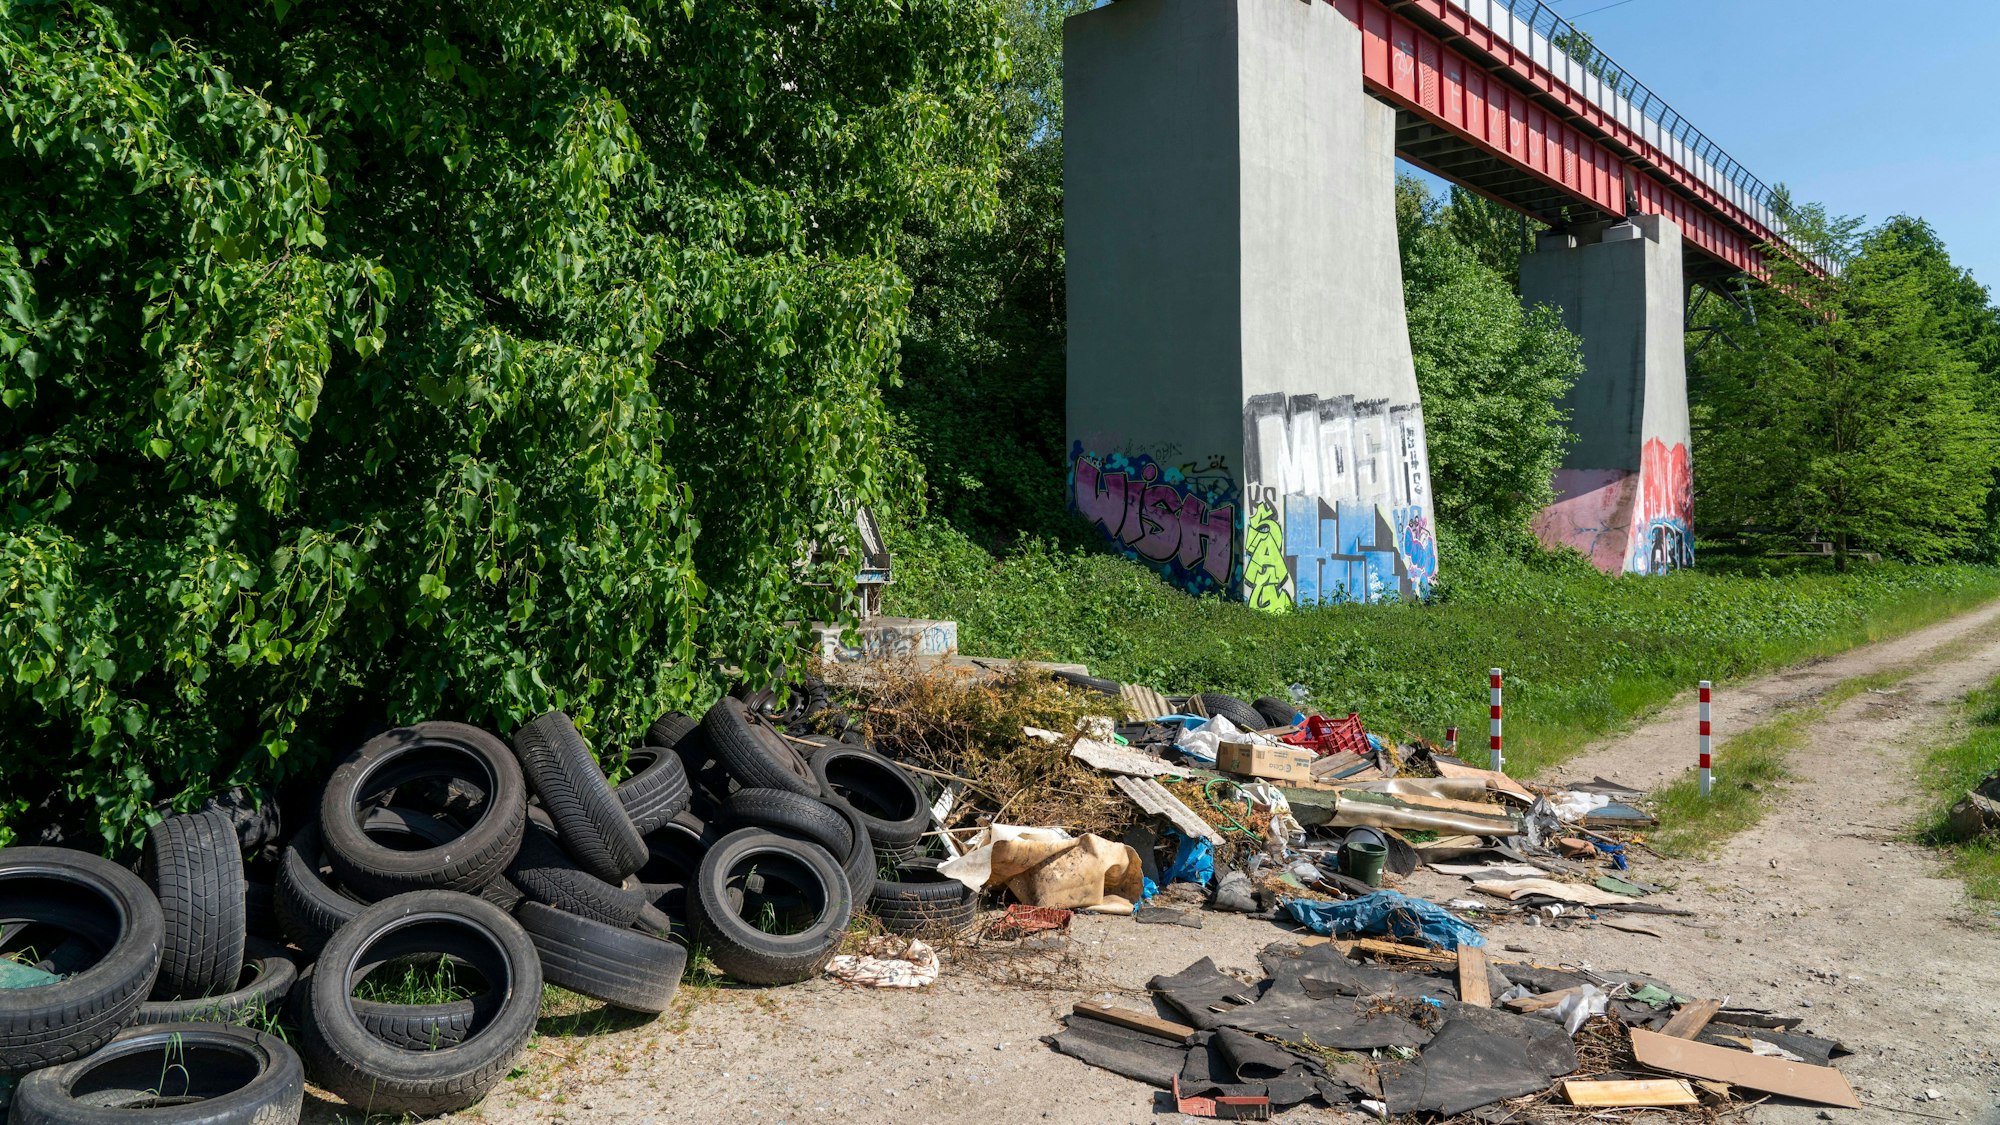 Illegal entsorgter Müll, Autoreifen, Bauschutt, Haushaltsmüll, Kleidung, an einem Weg neben einer Hauptstrasse in Bochum